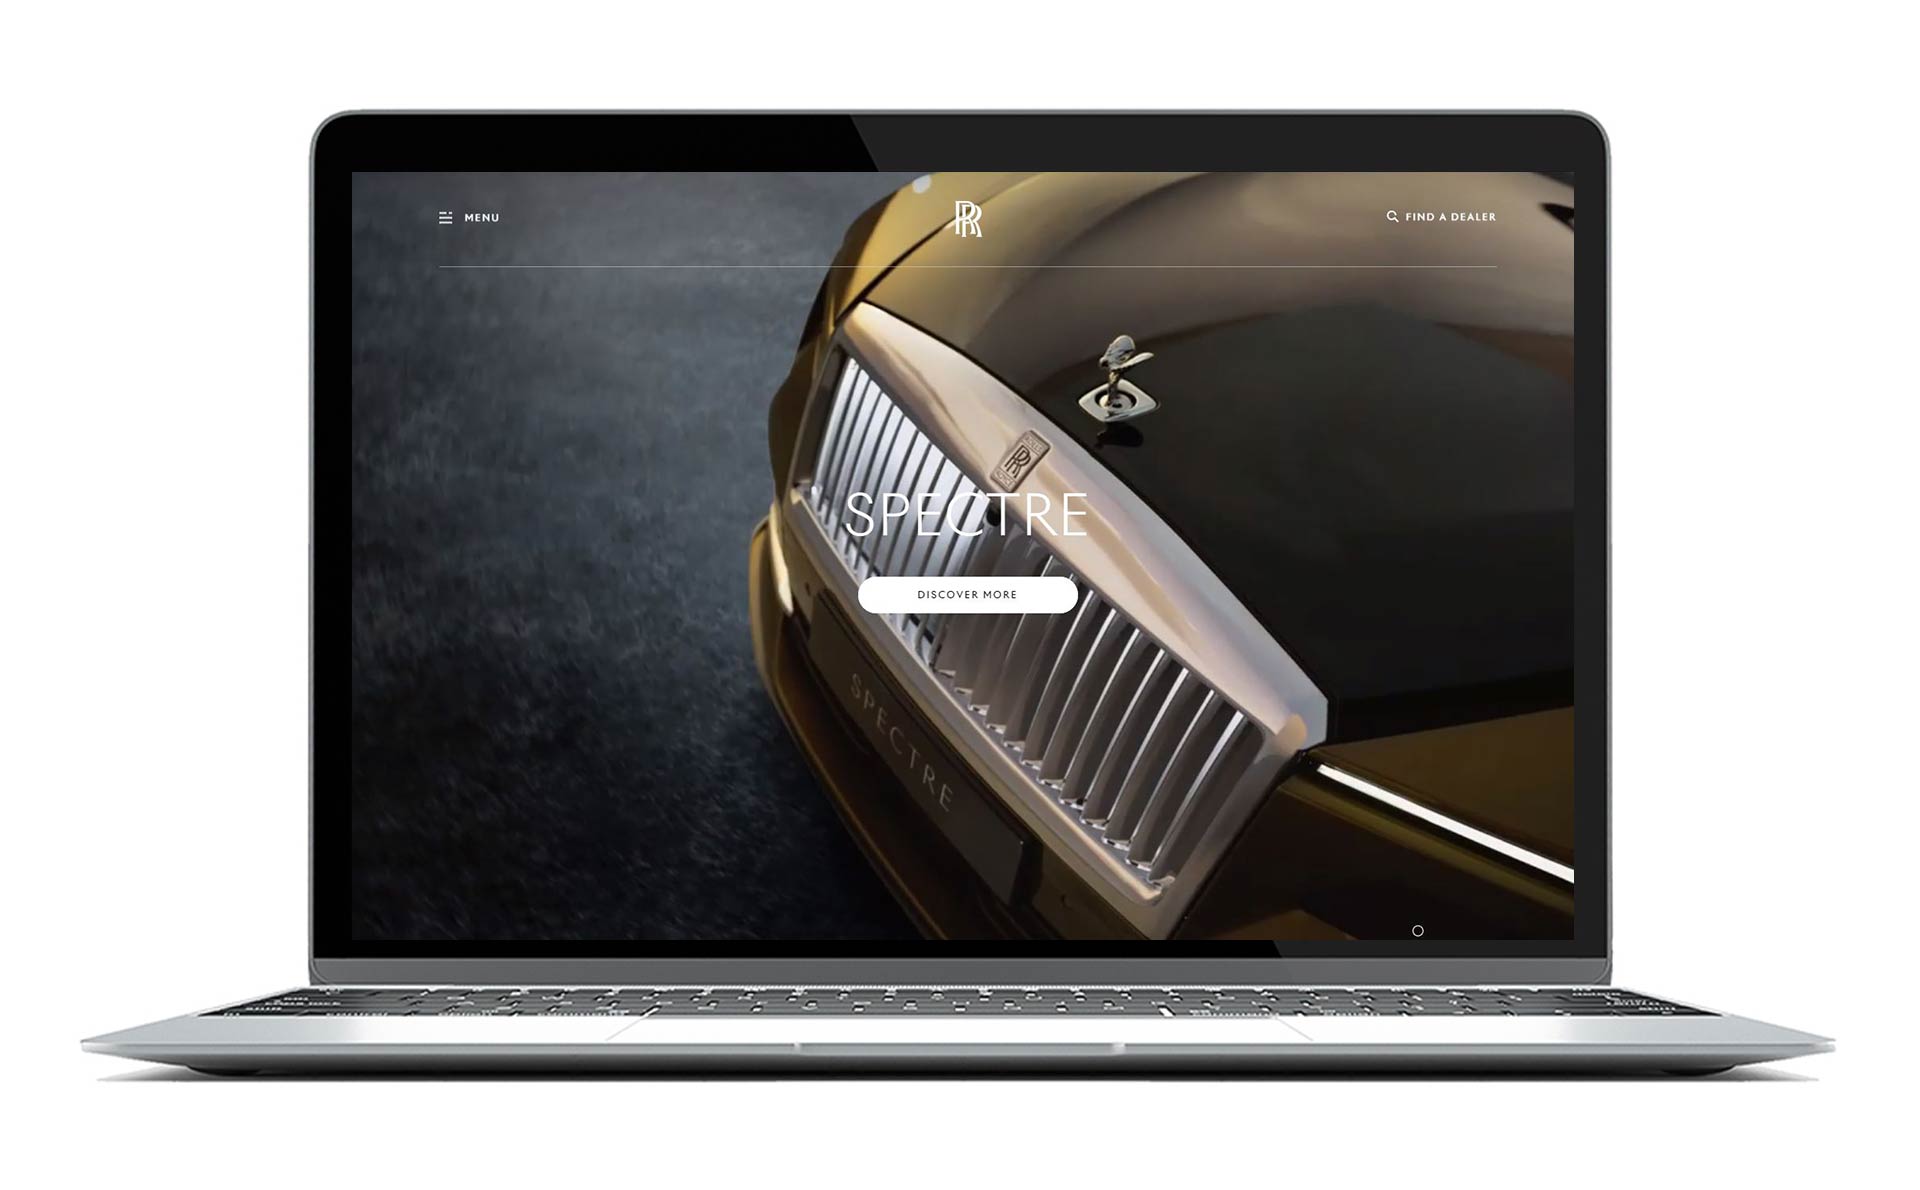 Rolls Roys-ov Spectre prikazan na ekranu lap topa kao jedan od najboljih sajtova za automobile.